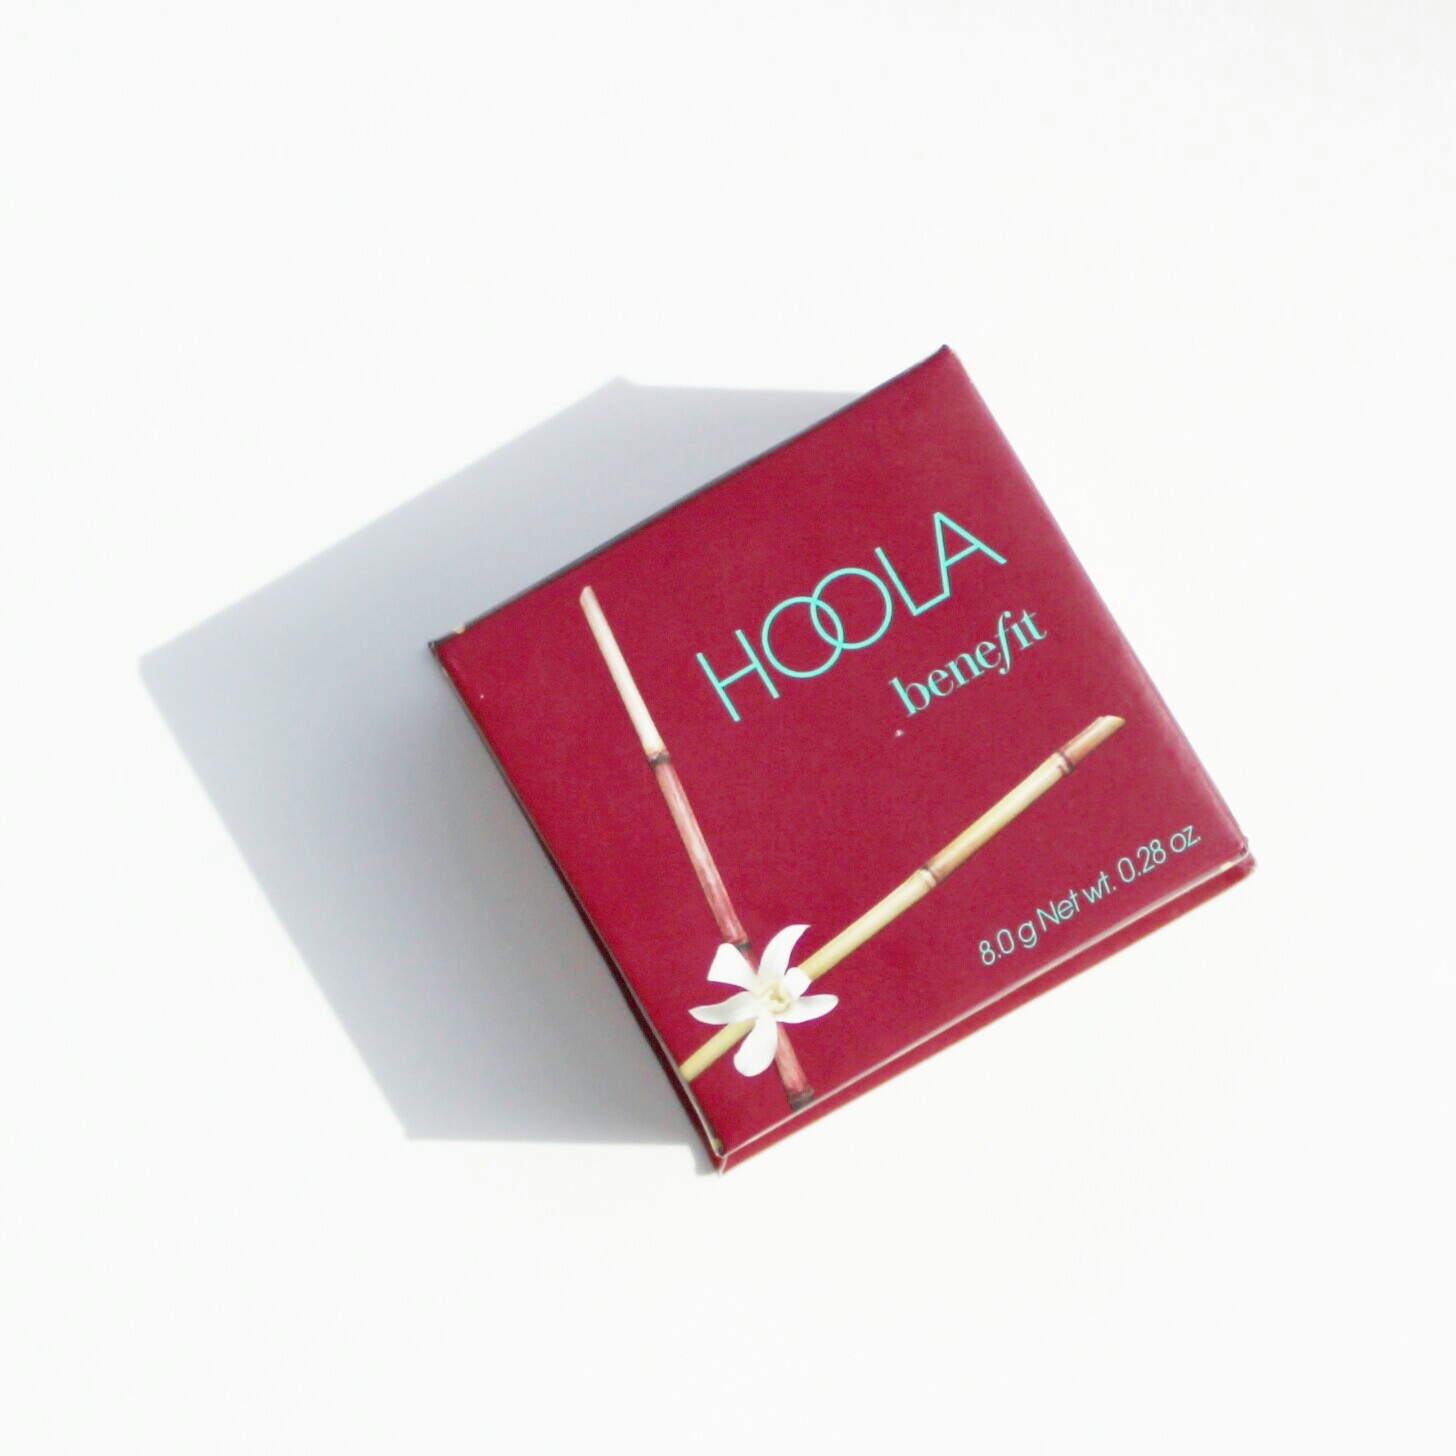 BENEFIT COSMETICS | Hoola Bronzer